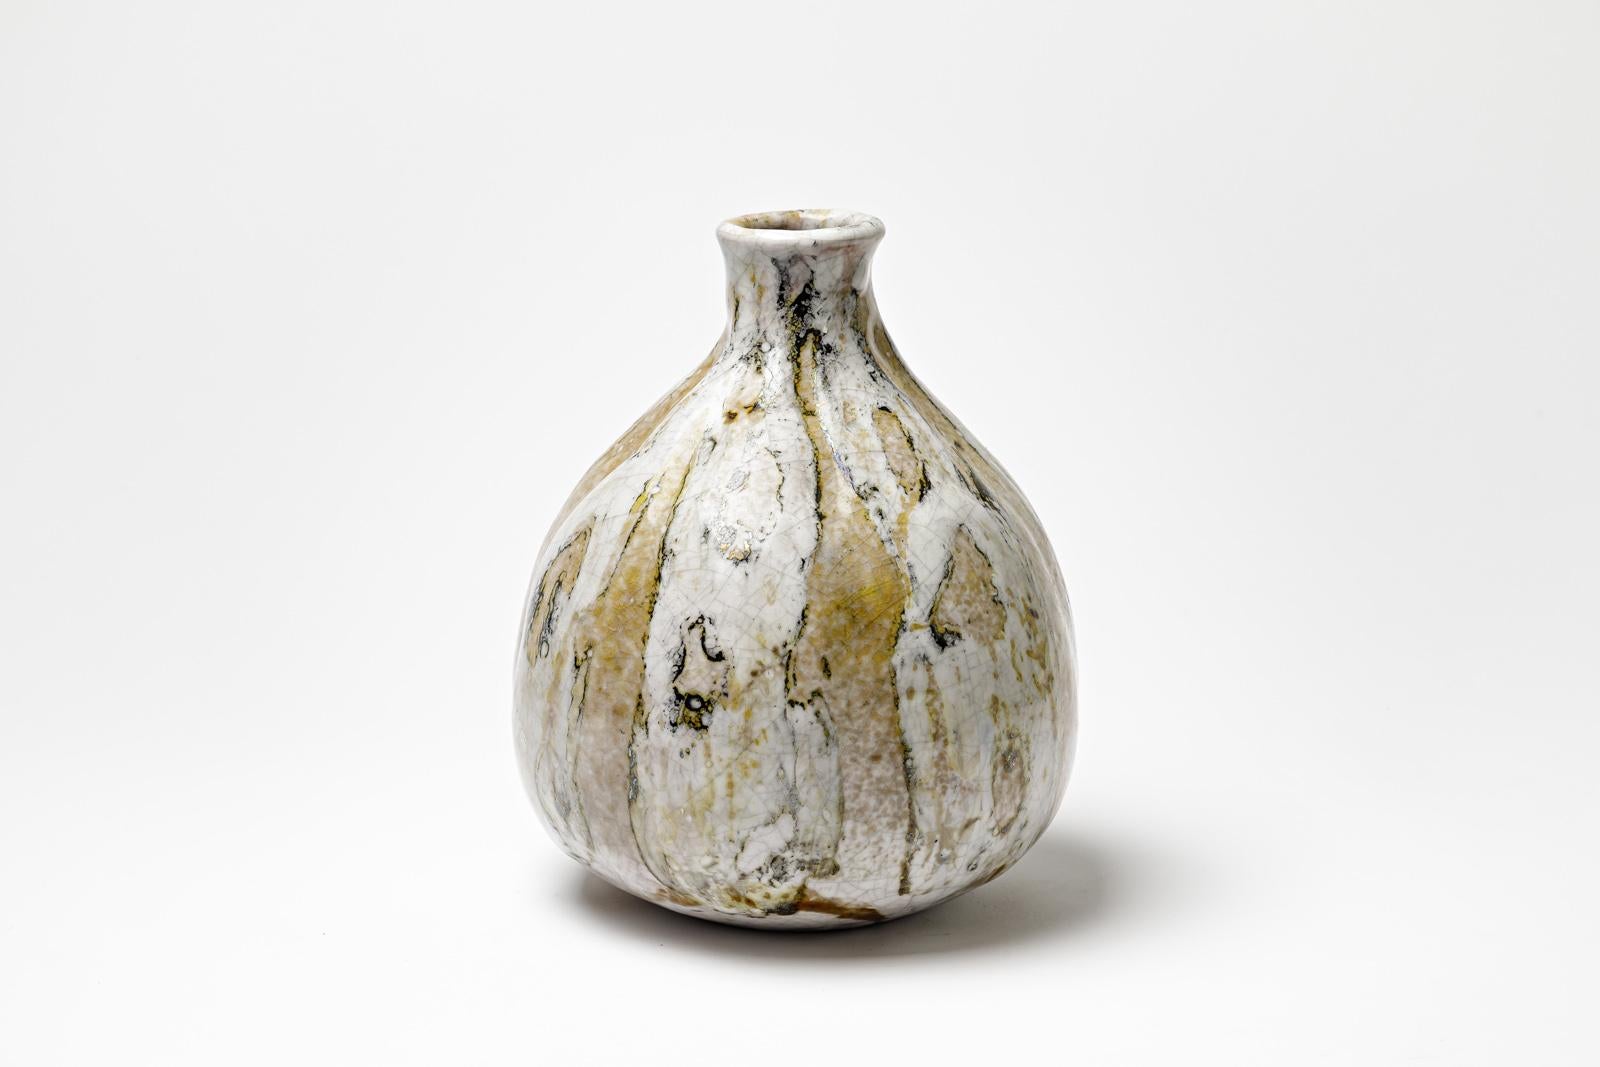 Vase en céramique émaillée blanche et jaune de Gisèle Buthod Garçon. 
Raku a tiré. Monogramme de l'artiste sous la base. Vers 1980-1990.
H : 9.8' x 9.1' pouces.